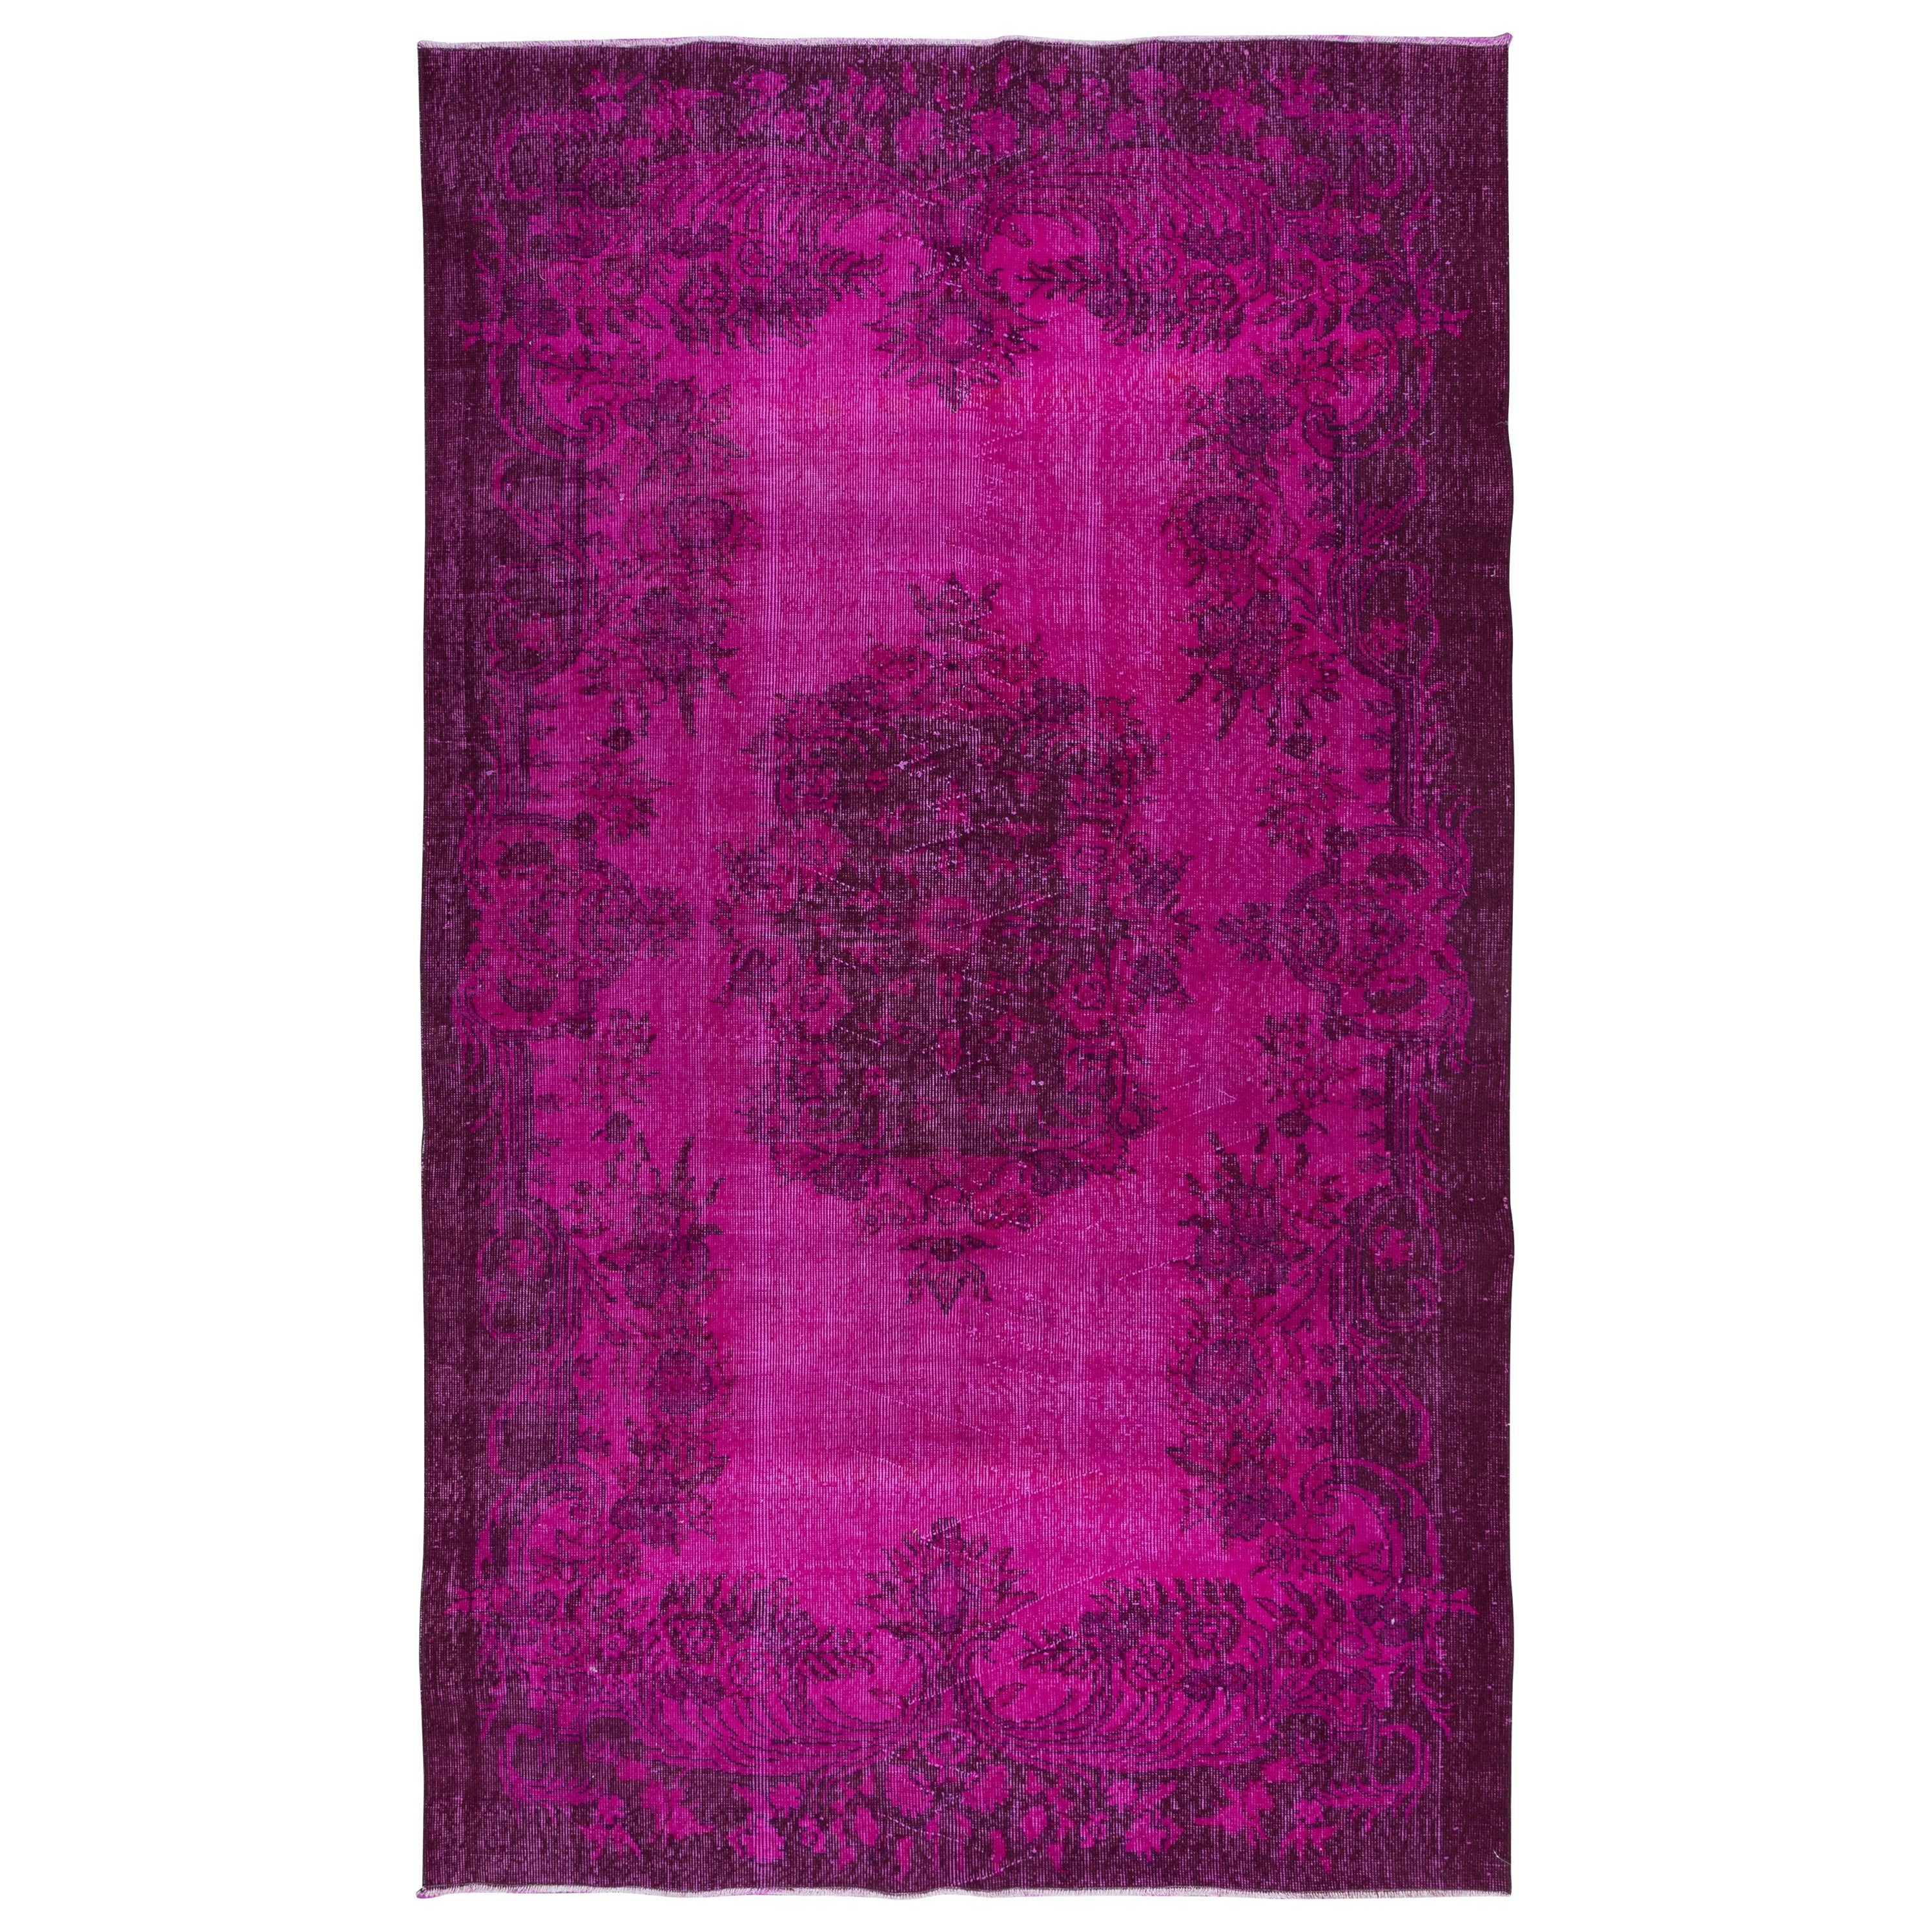 5.7x9.2 Ft Aubusson inspirierter rosa Teppich für moderne Inneneinrichtung, handgefertigt in der Türkei